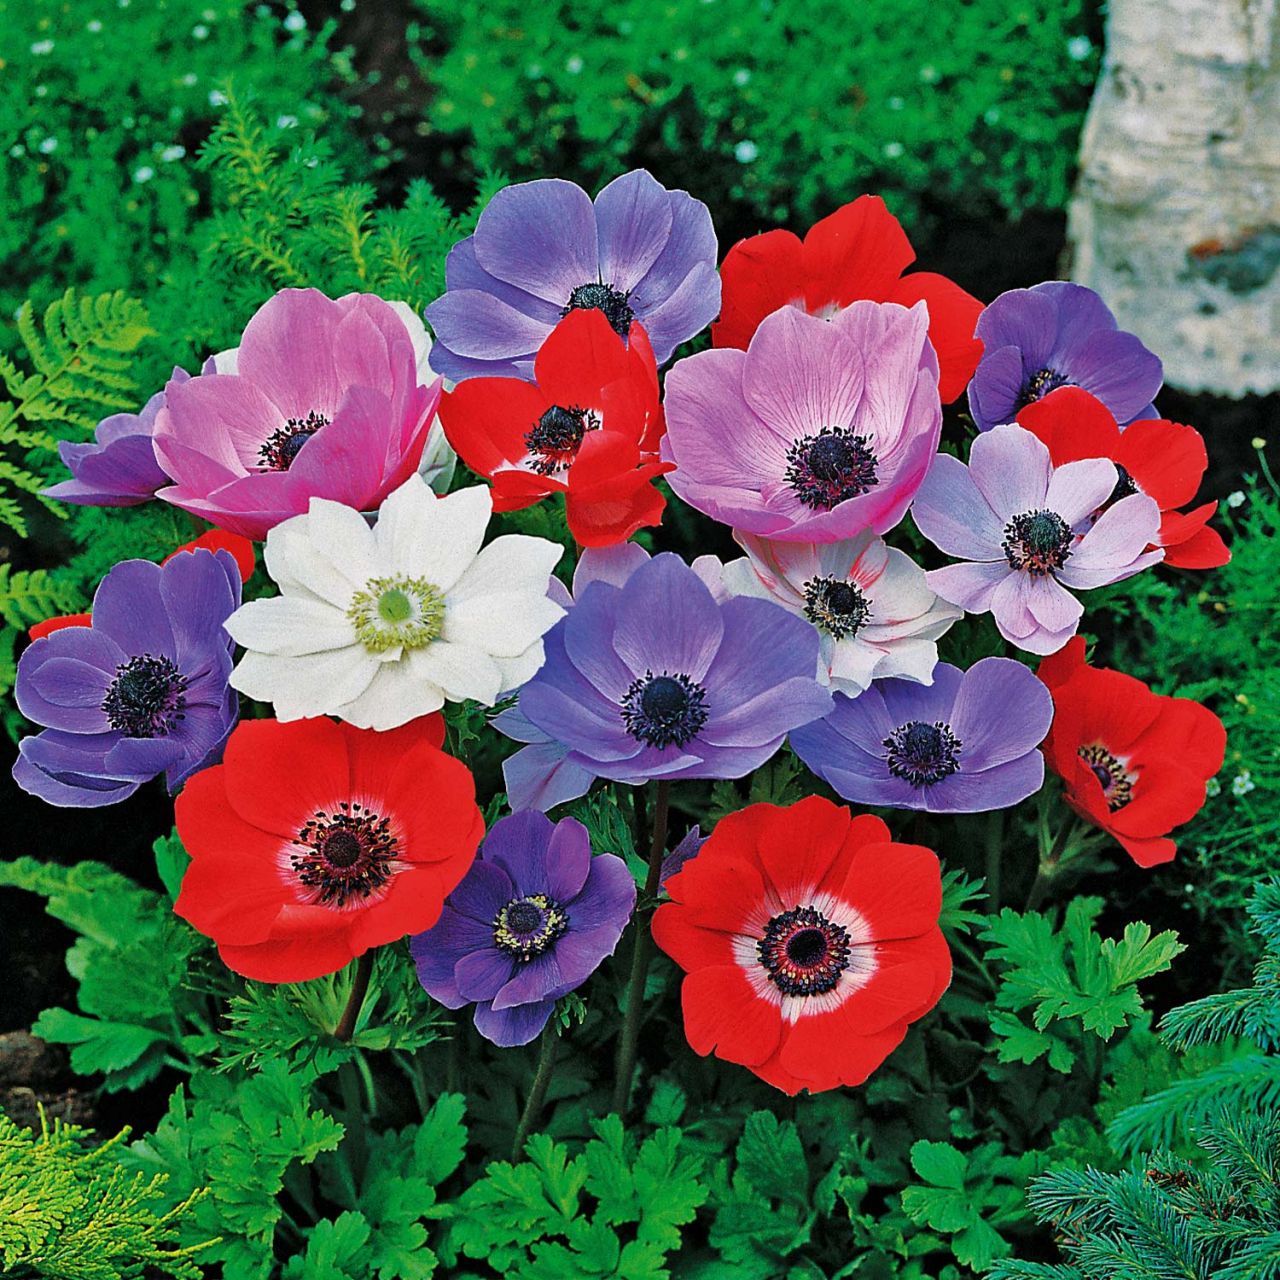 Kategorie <b>Frühlings-Blumenzwiebeln </b> - Garten-Anemone 'De Caen' - Mischung - 15 Stück - Anemone coronaria 'De Caen Mischung'